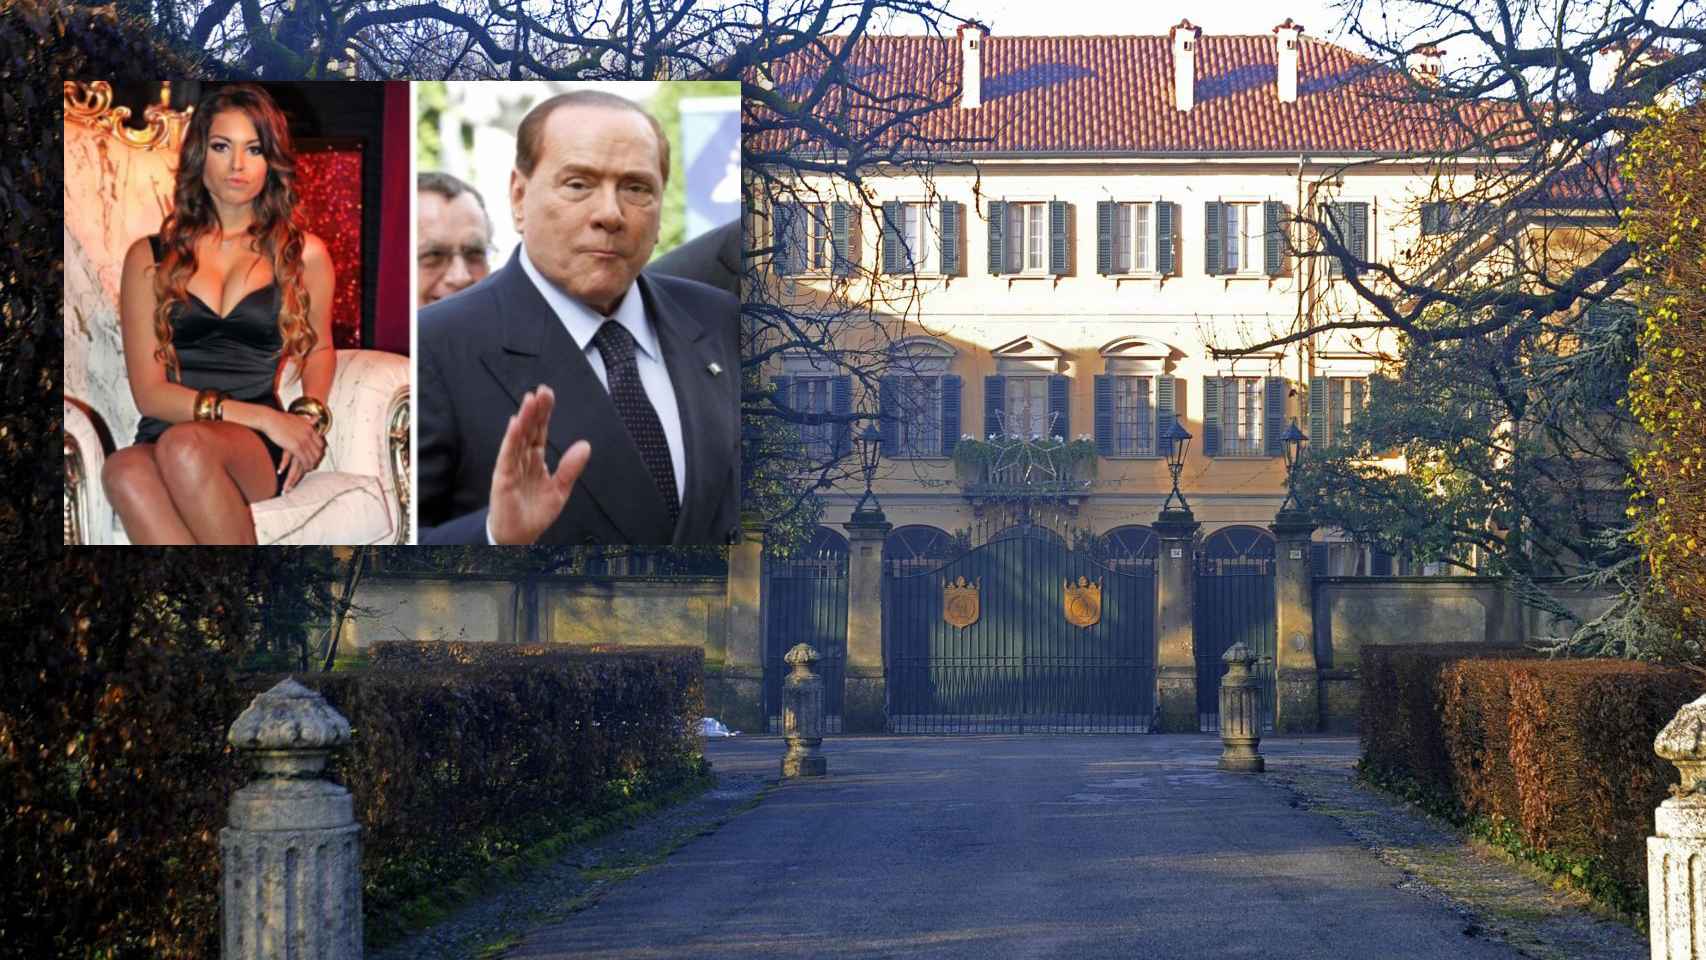 El 'cuarto oscuro' se situaba en la villa San Martino (Ancore), una de las mansiones de Berlusconi